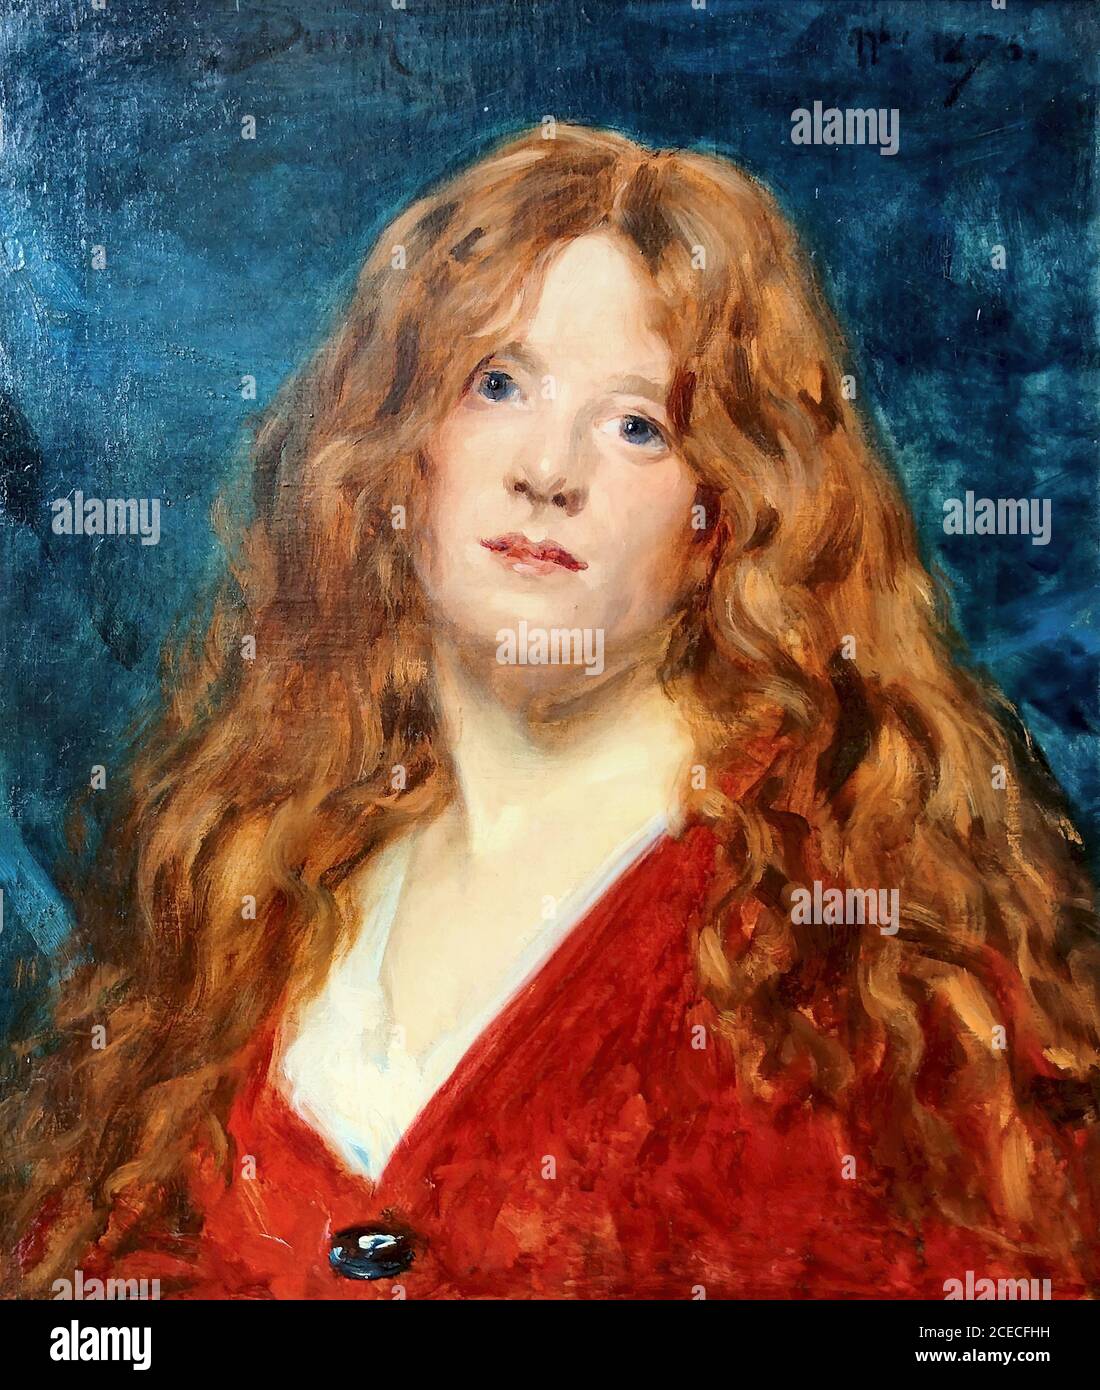 Carolus-Duran - Portrait De Femme Rousse - French School - 19th Century  Stock Photo - Alamy